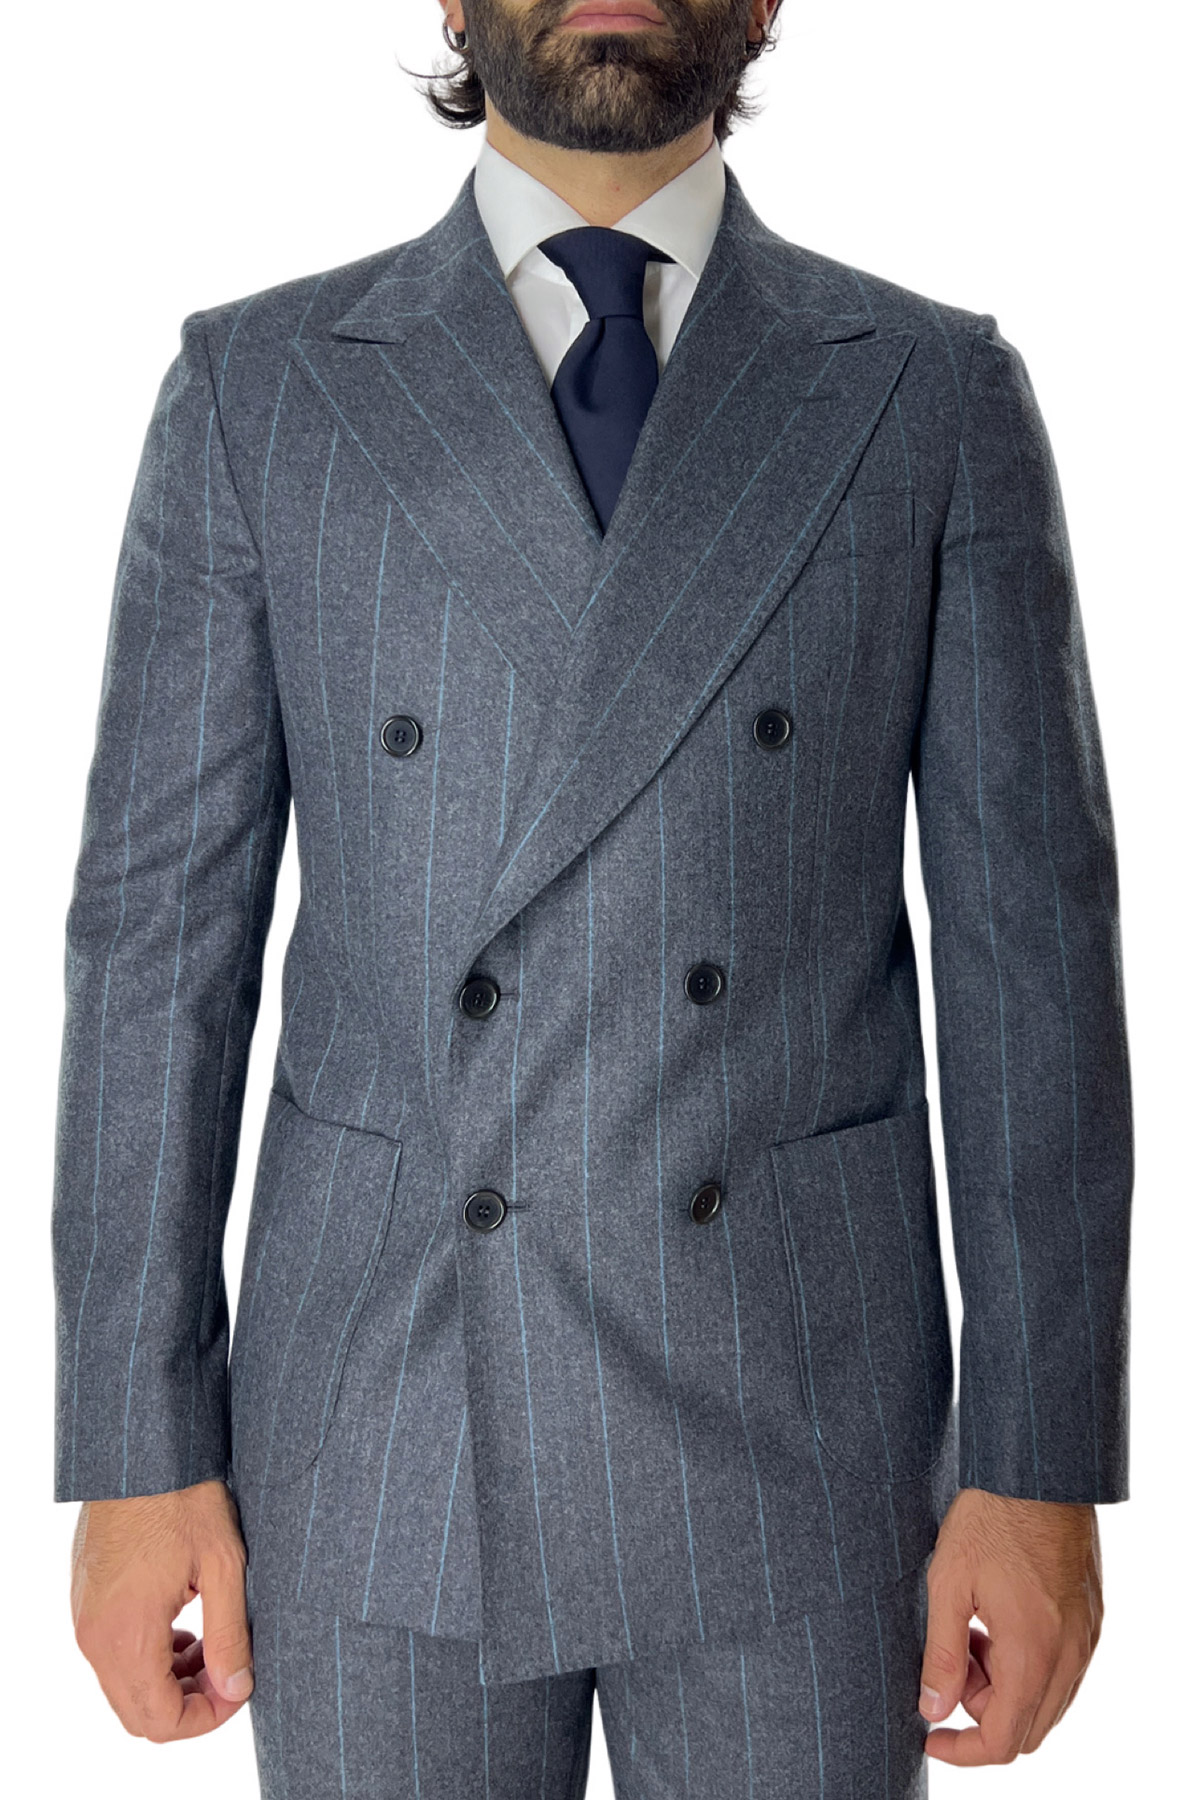 Abito uomo con giacca doppiopetto gessato grigio e pantalone slim fit tasca america in lana Vitale Barberis Canonico